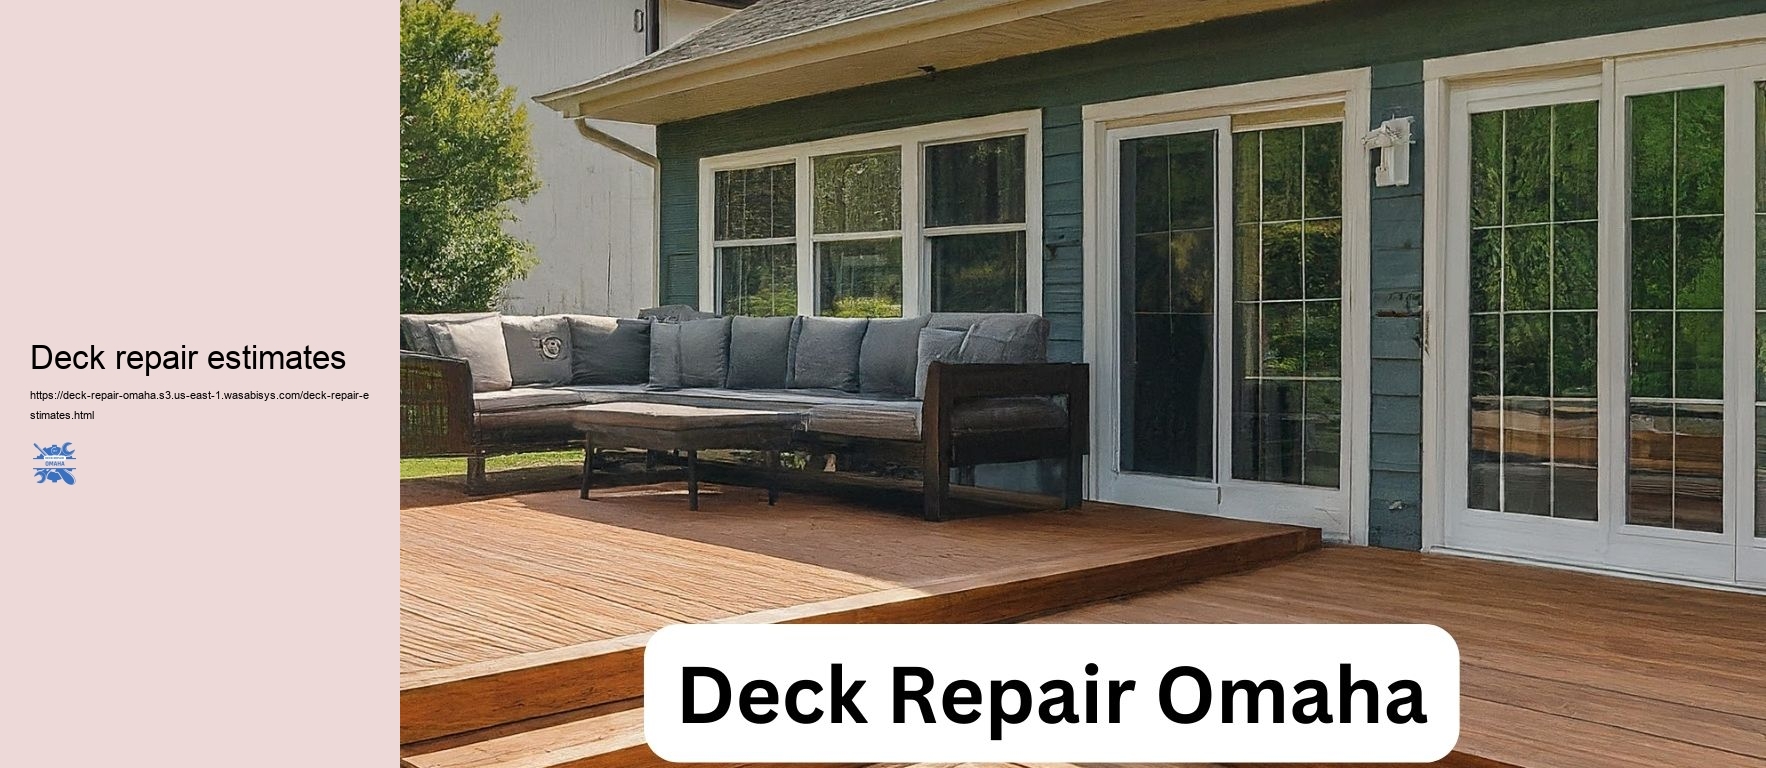 Deck repair estimates